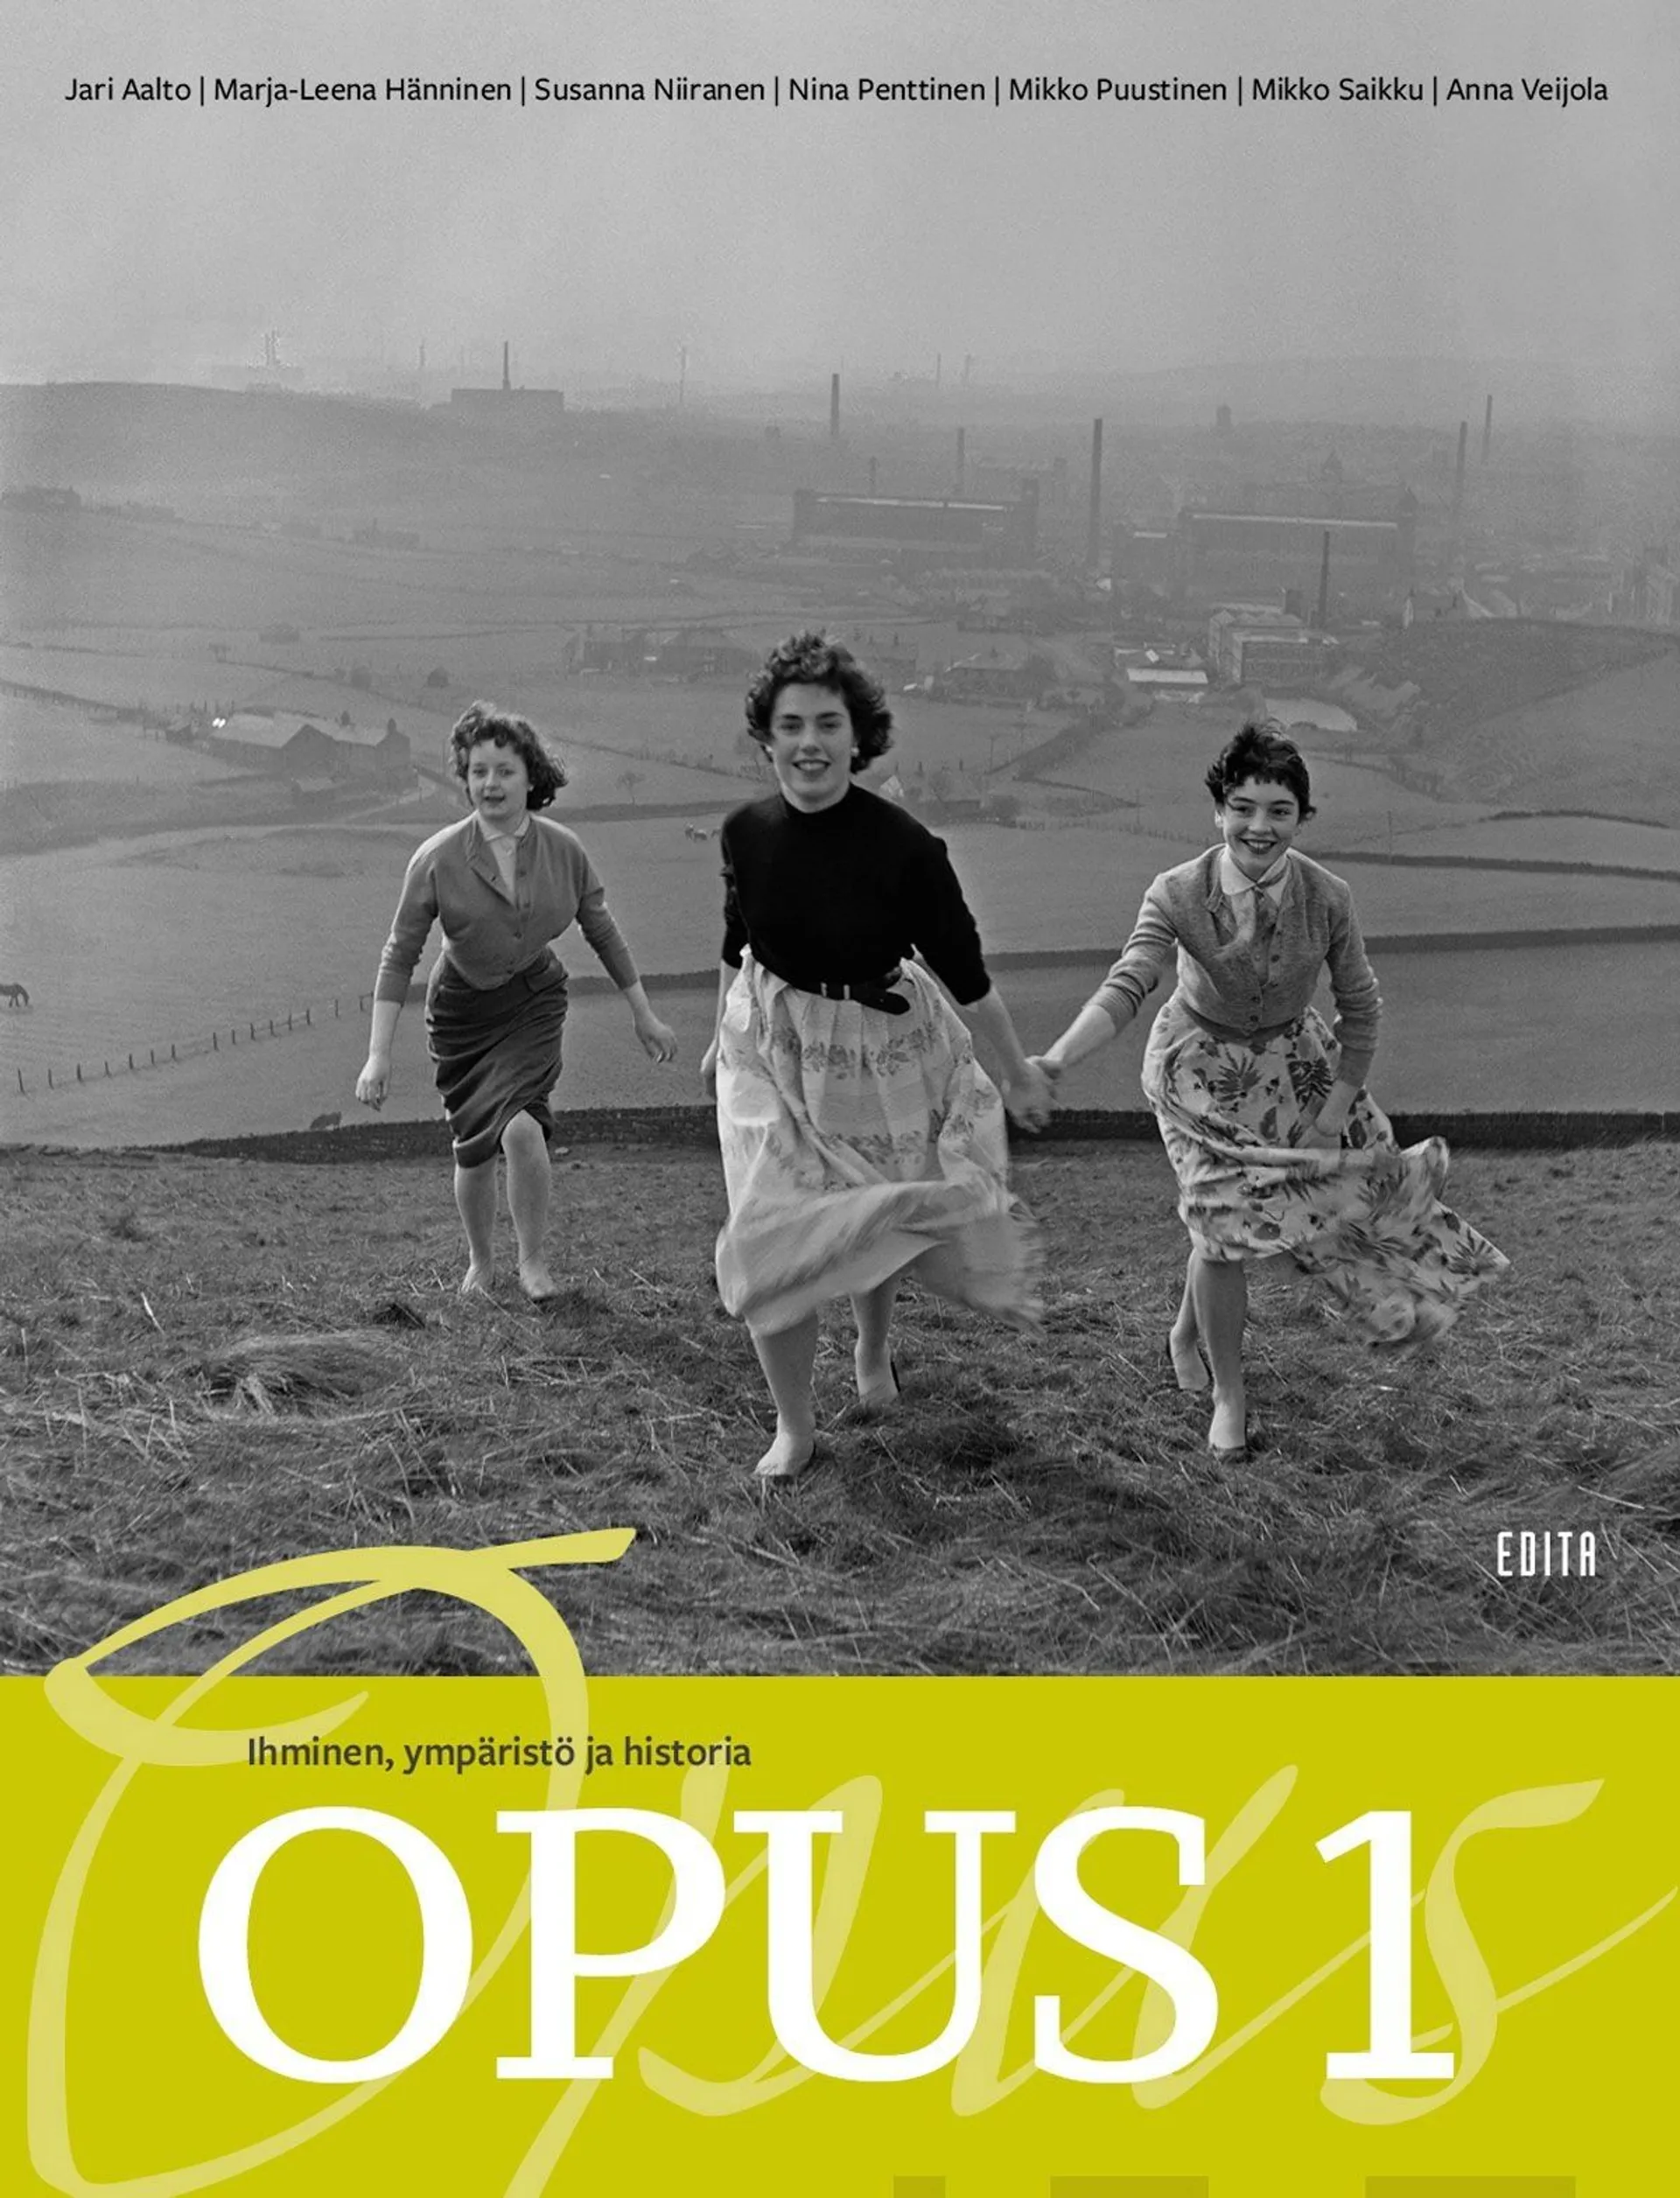 Aalto, Opus 1 HI1 Ihminen, ympäristö ja historia (LOPS21)